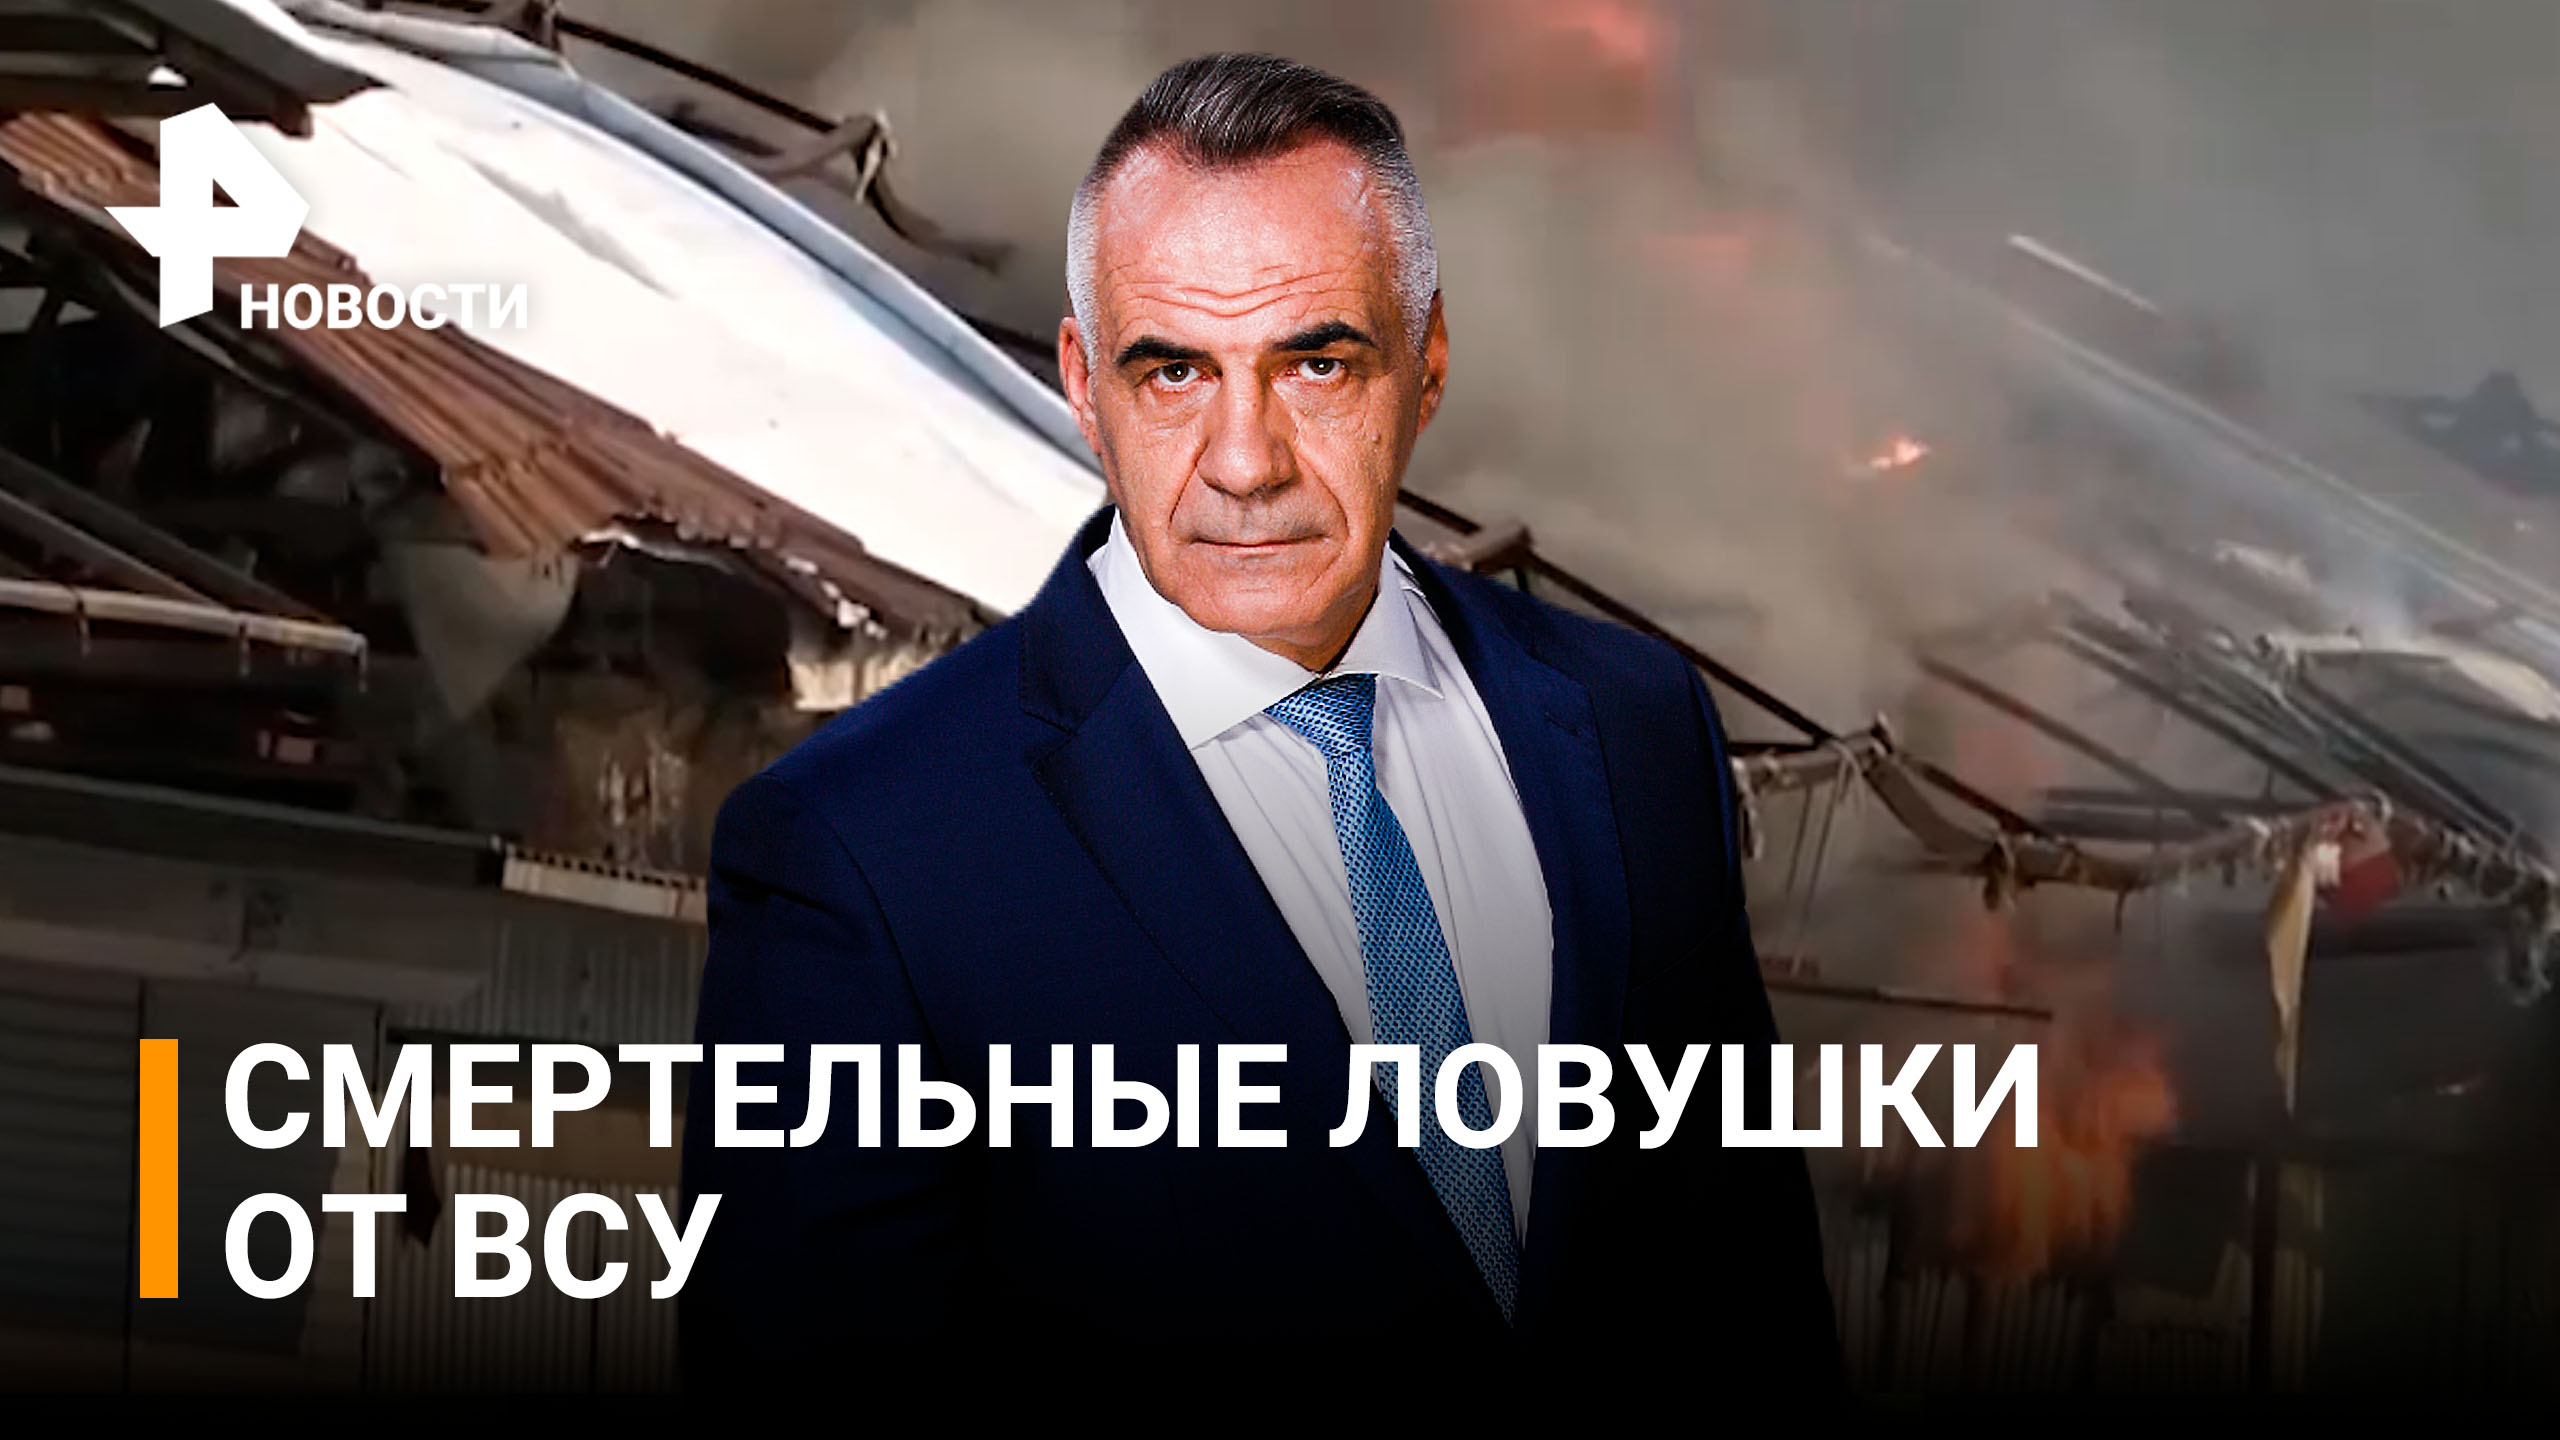 Как ВСУ пытаются устроить смертельные ловушки для спасателей в Донецке / ИТОГИ с Петром Марченко